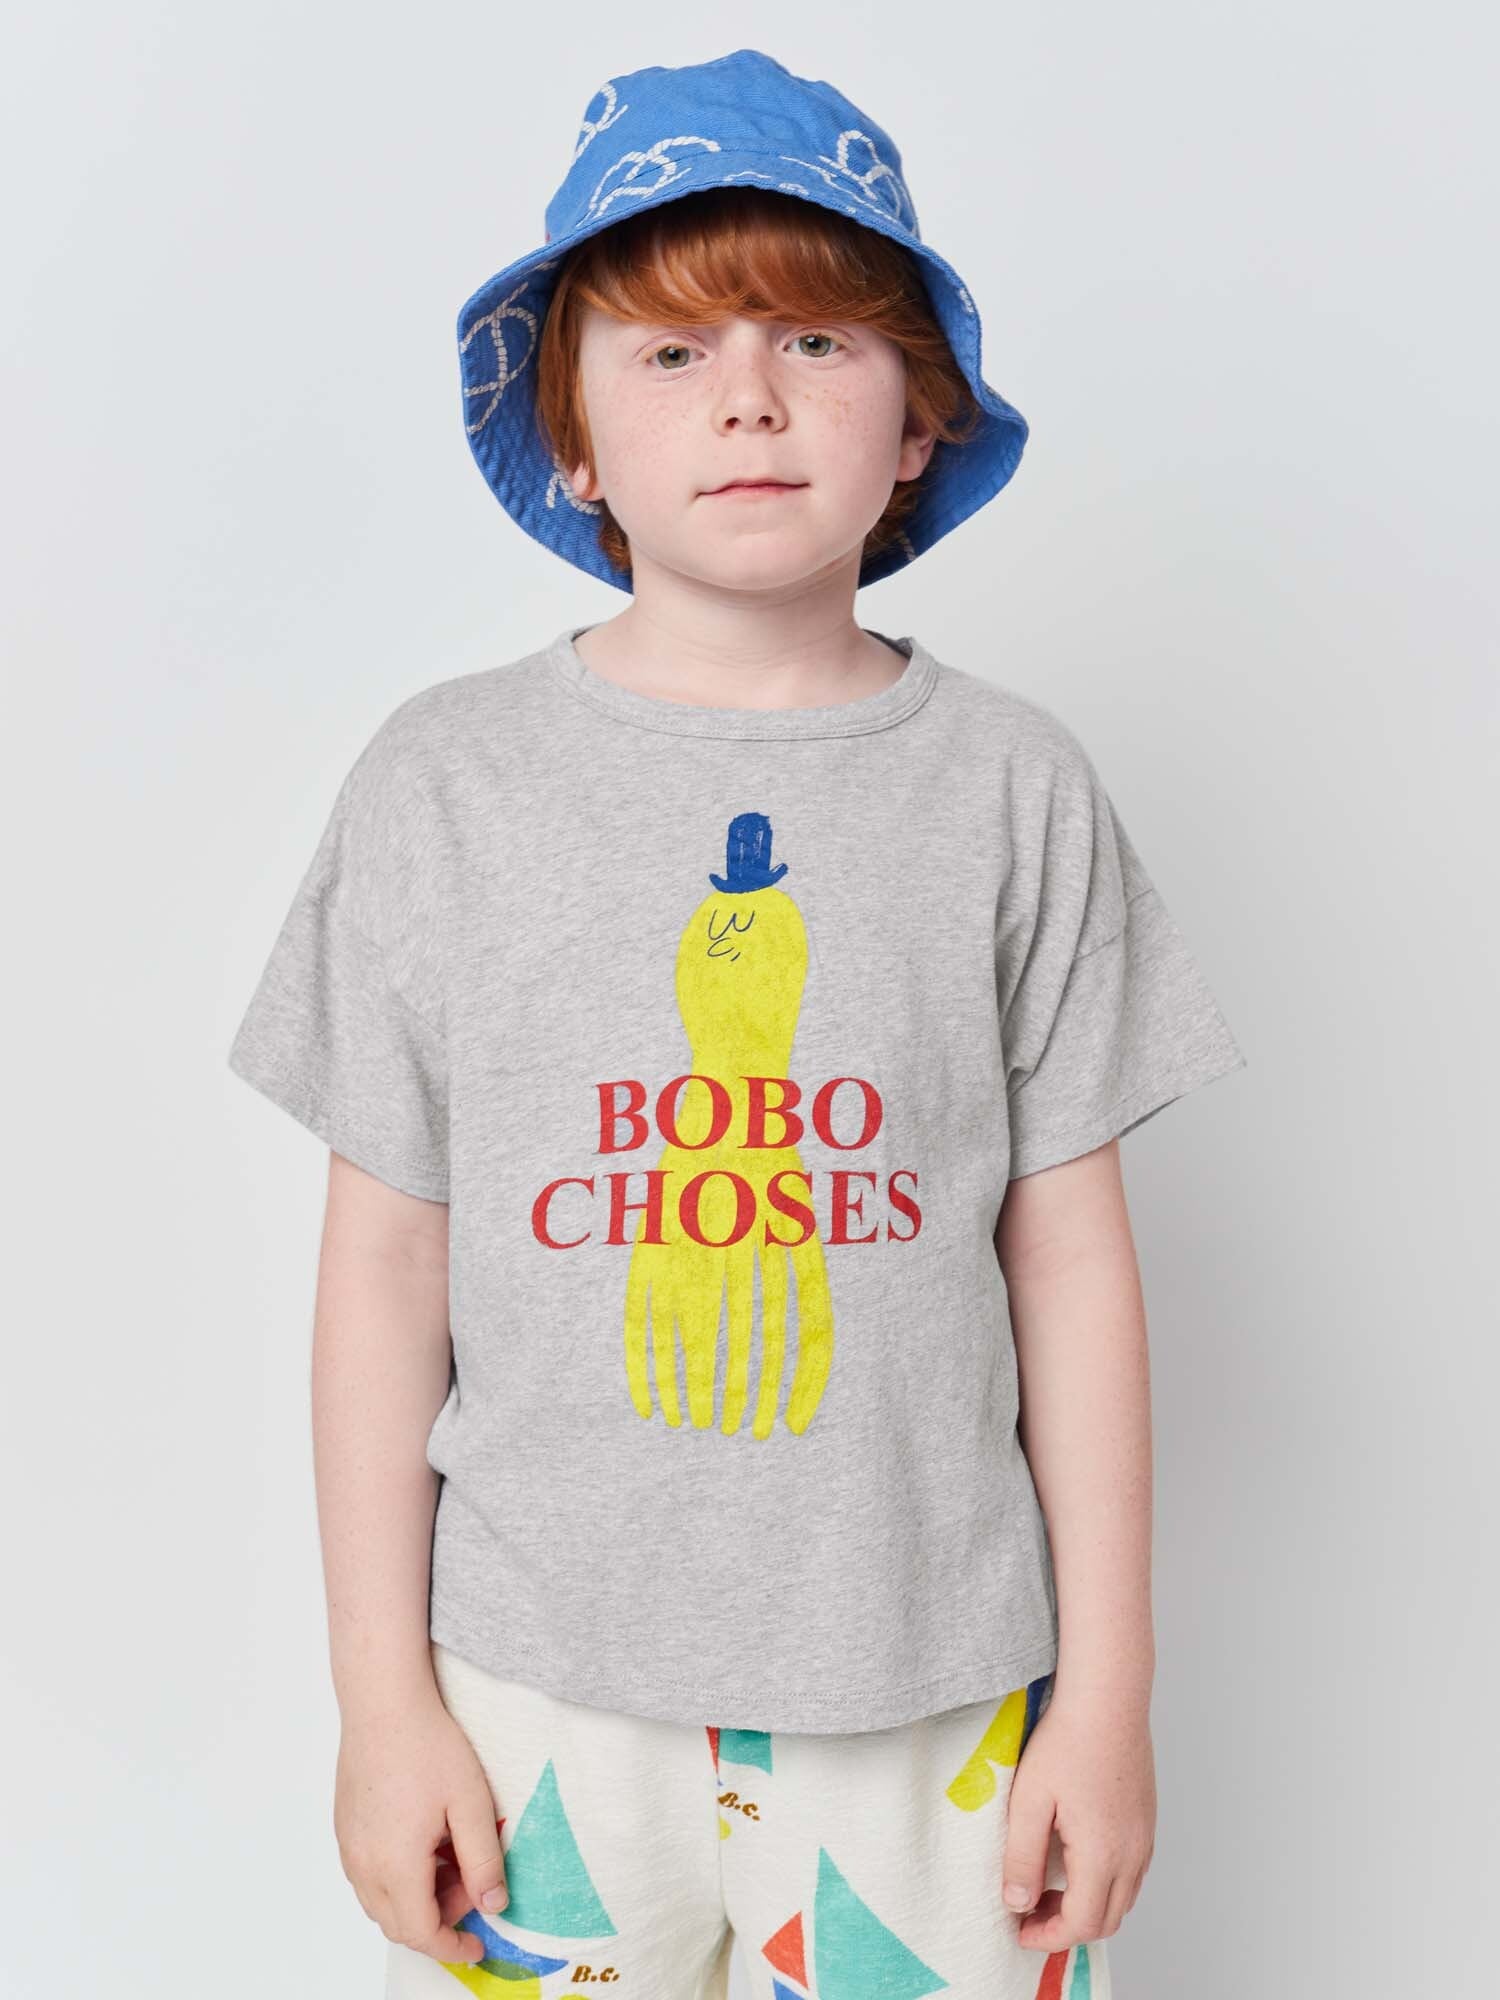 【新品】ボボショセス bobochoses Tシャツ 2-3y